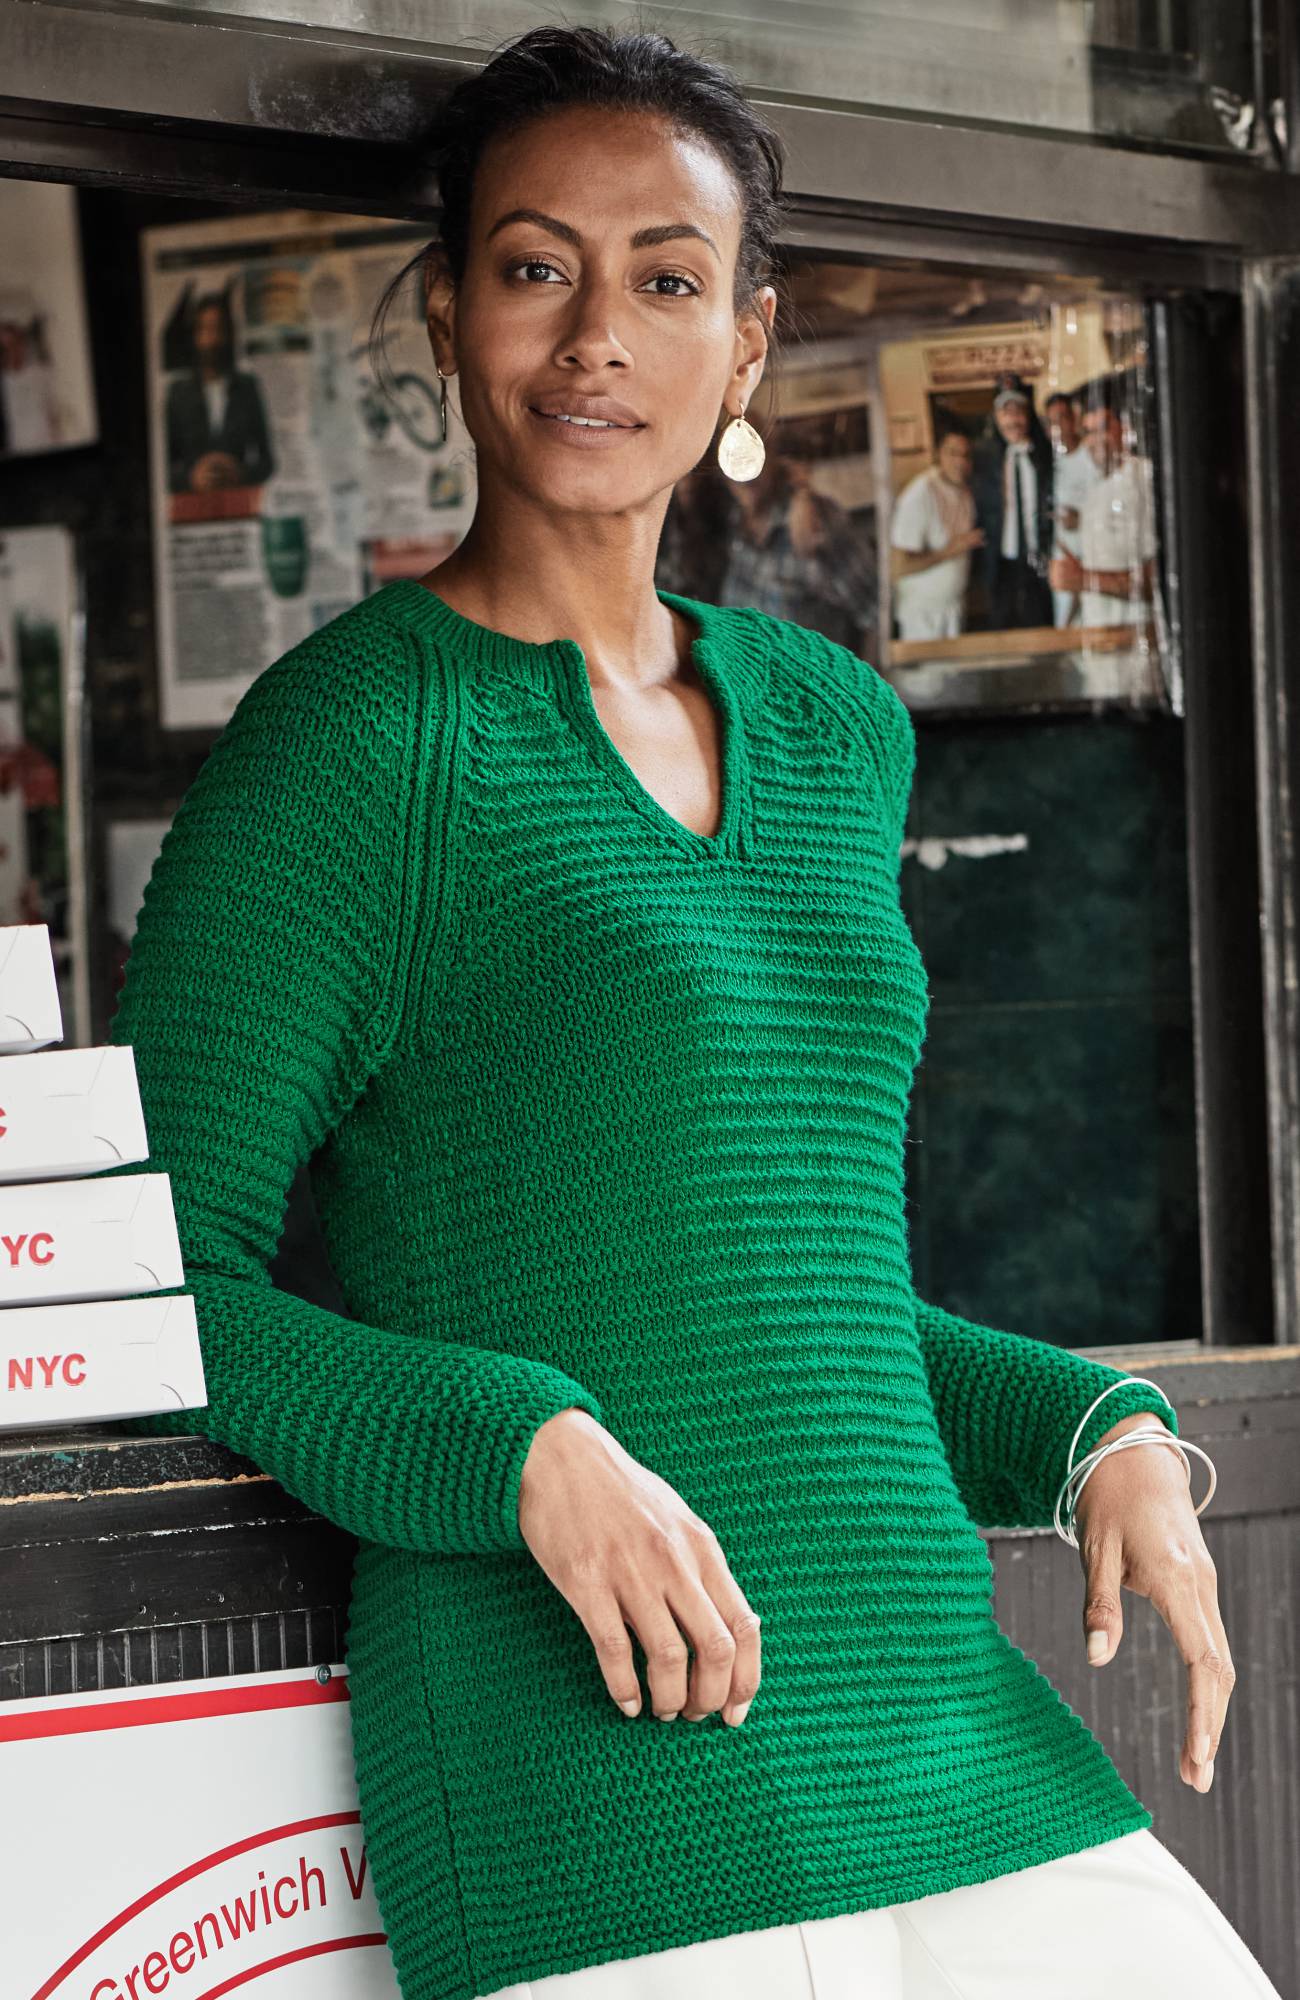 J. Jill Wearever Textured Split-Neck Sweater